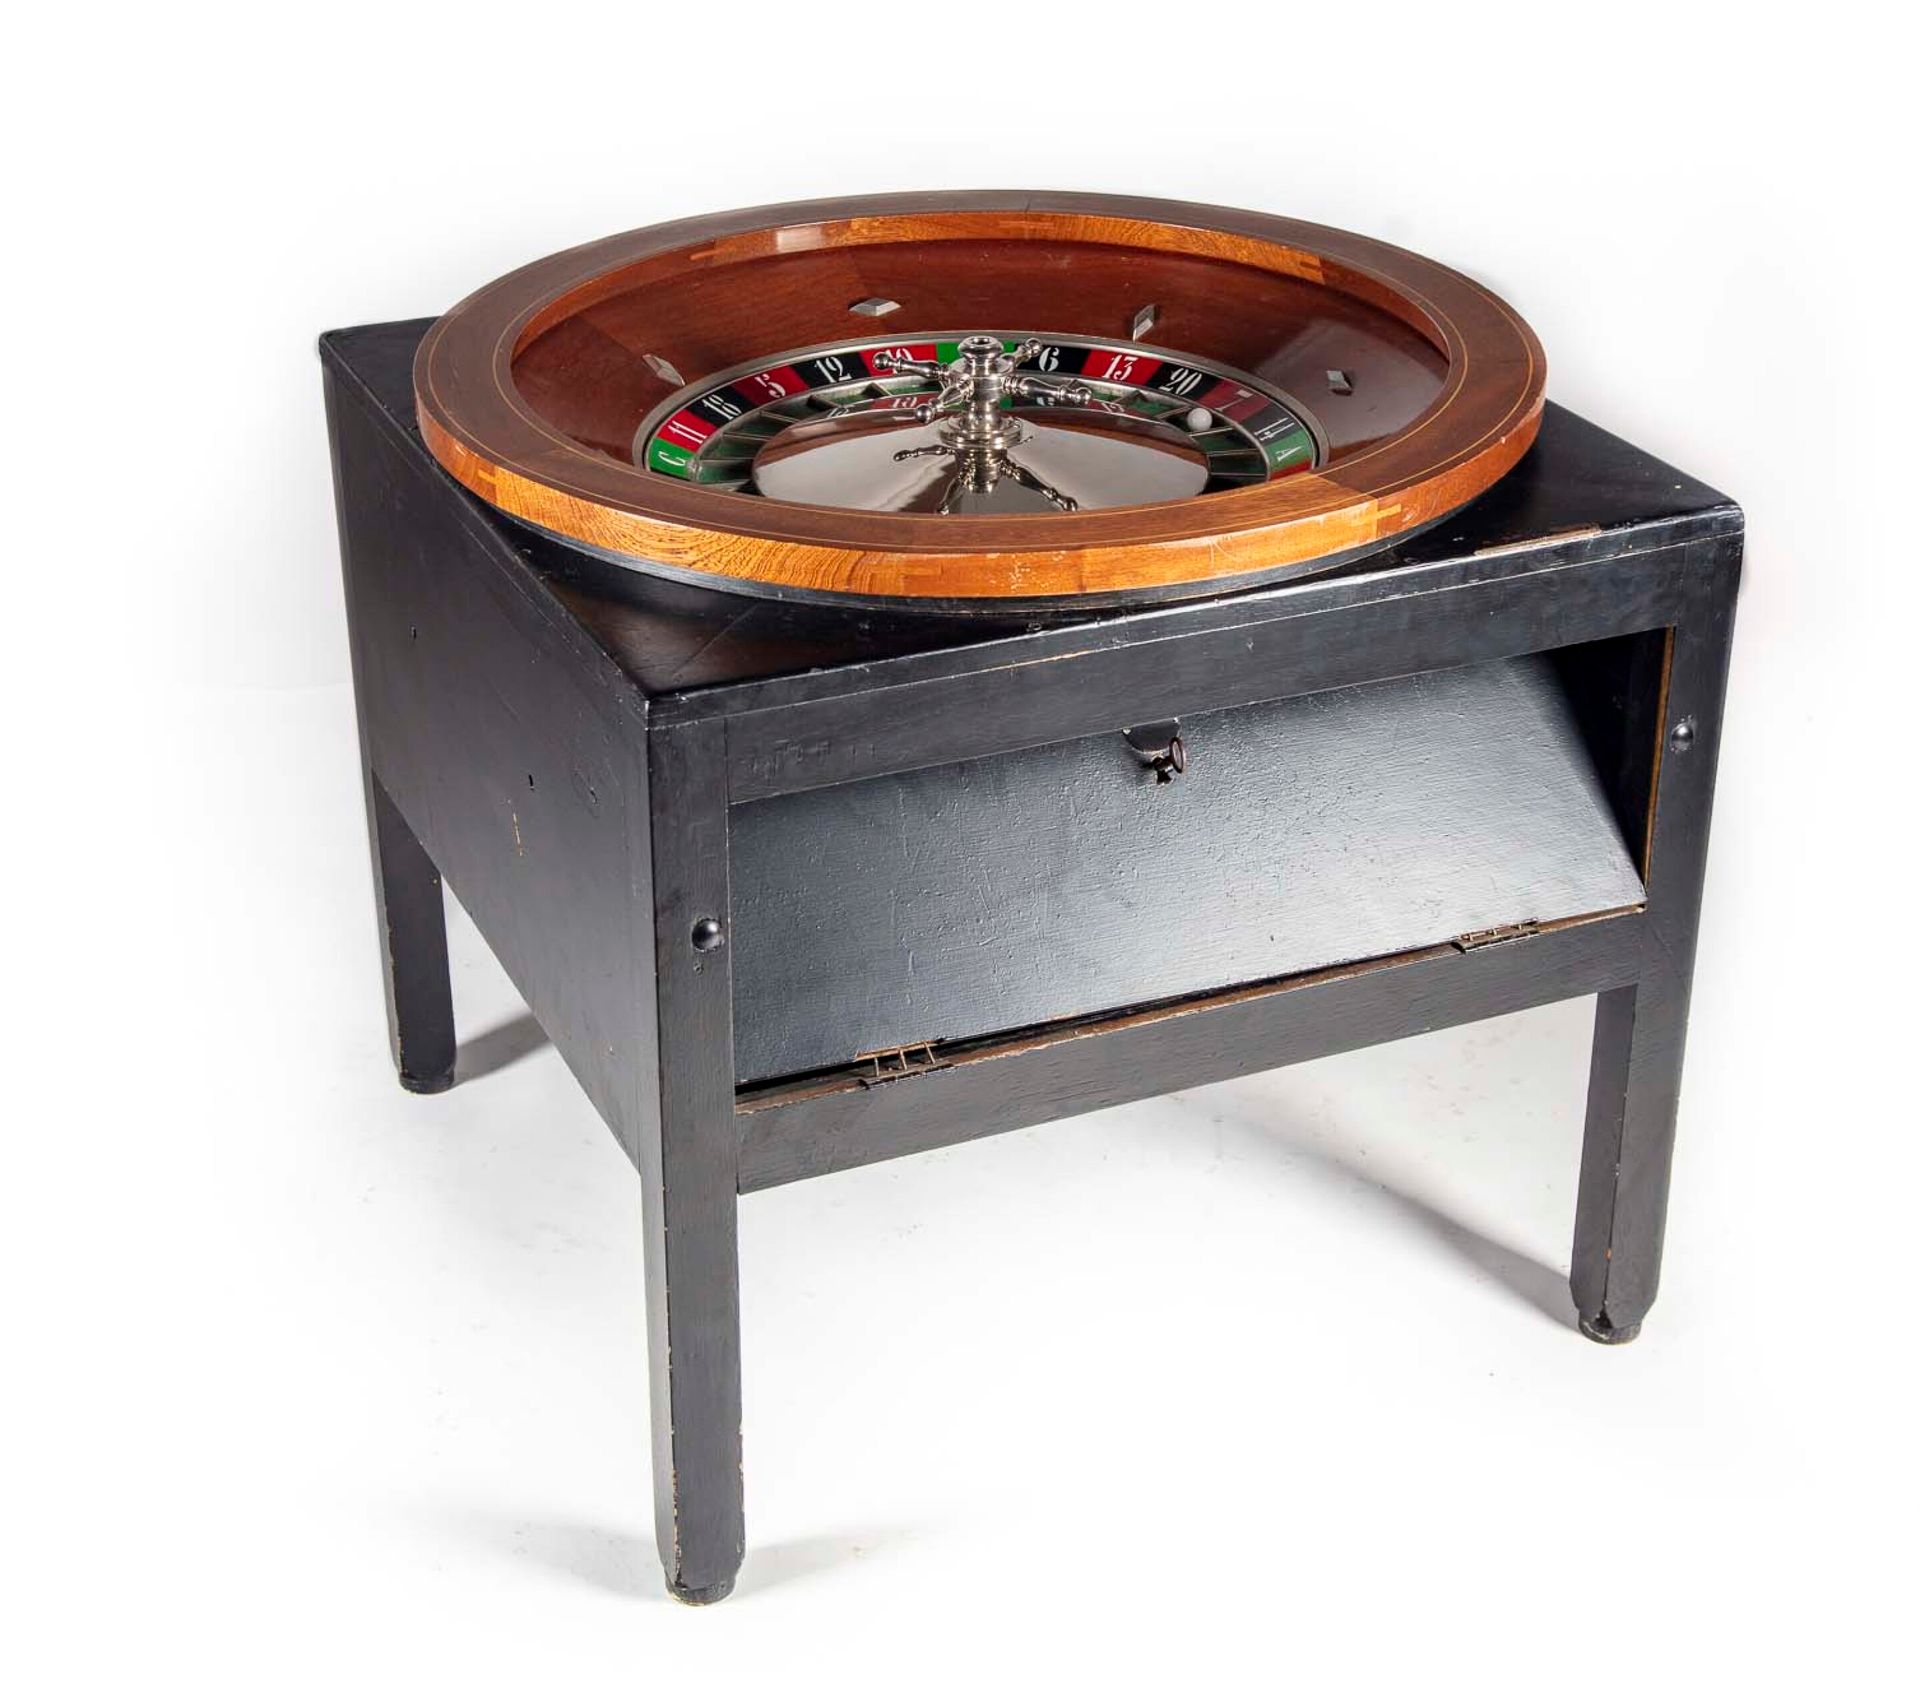 Null 古老的大型圆形赌场轮盘，用单板支撑在四个黑漆的脚上

H.74厘米；宽79厘米；长79厘米

小事故和磨损